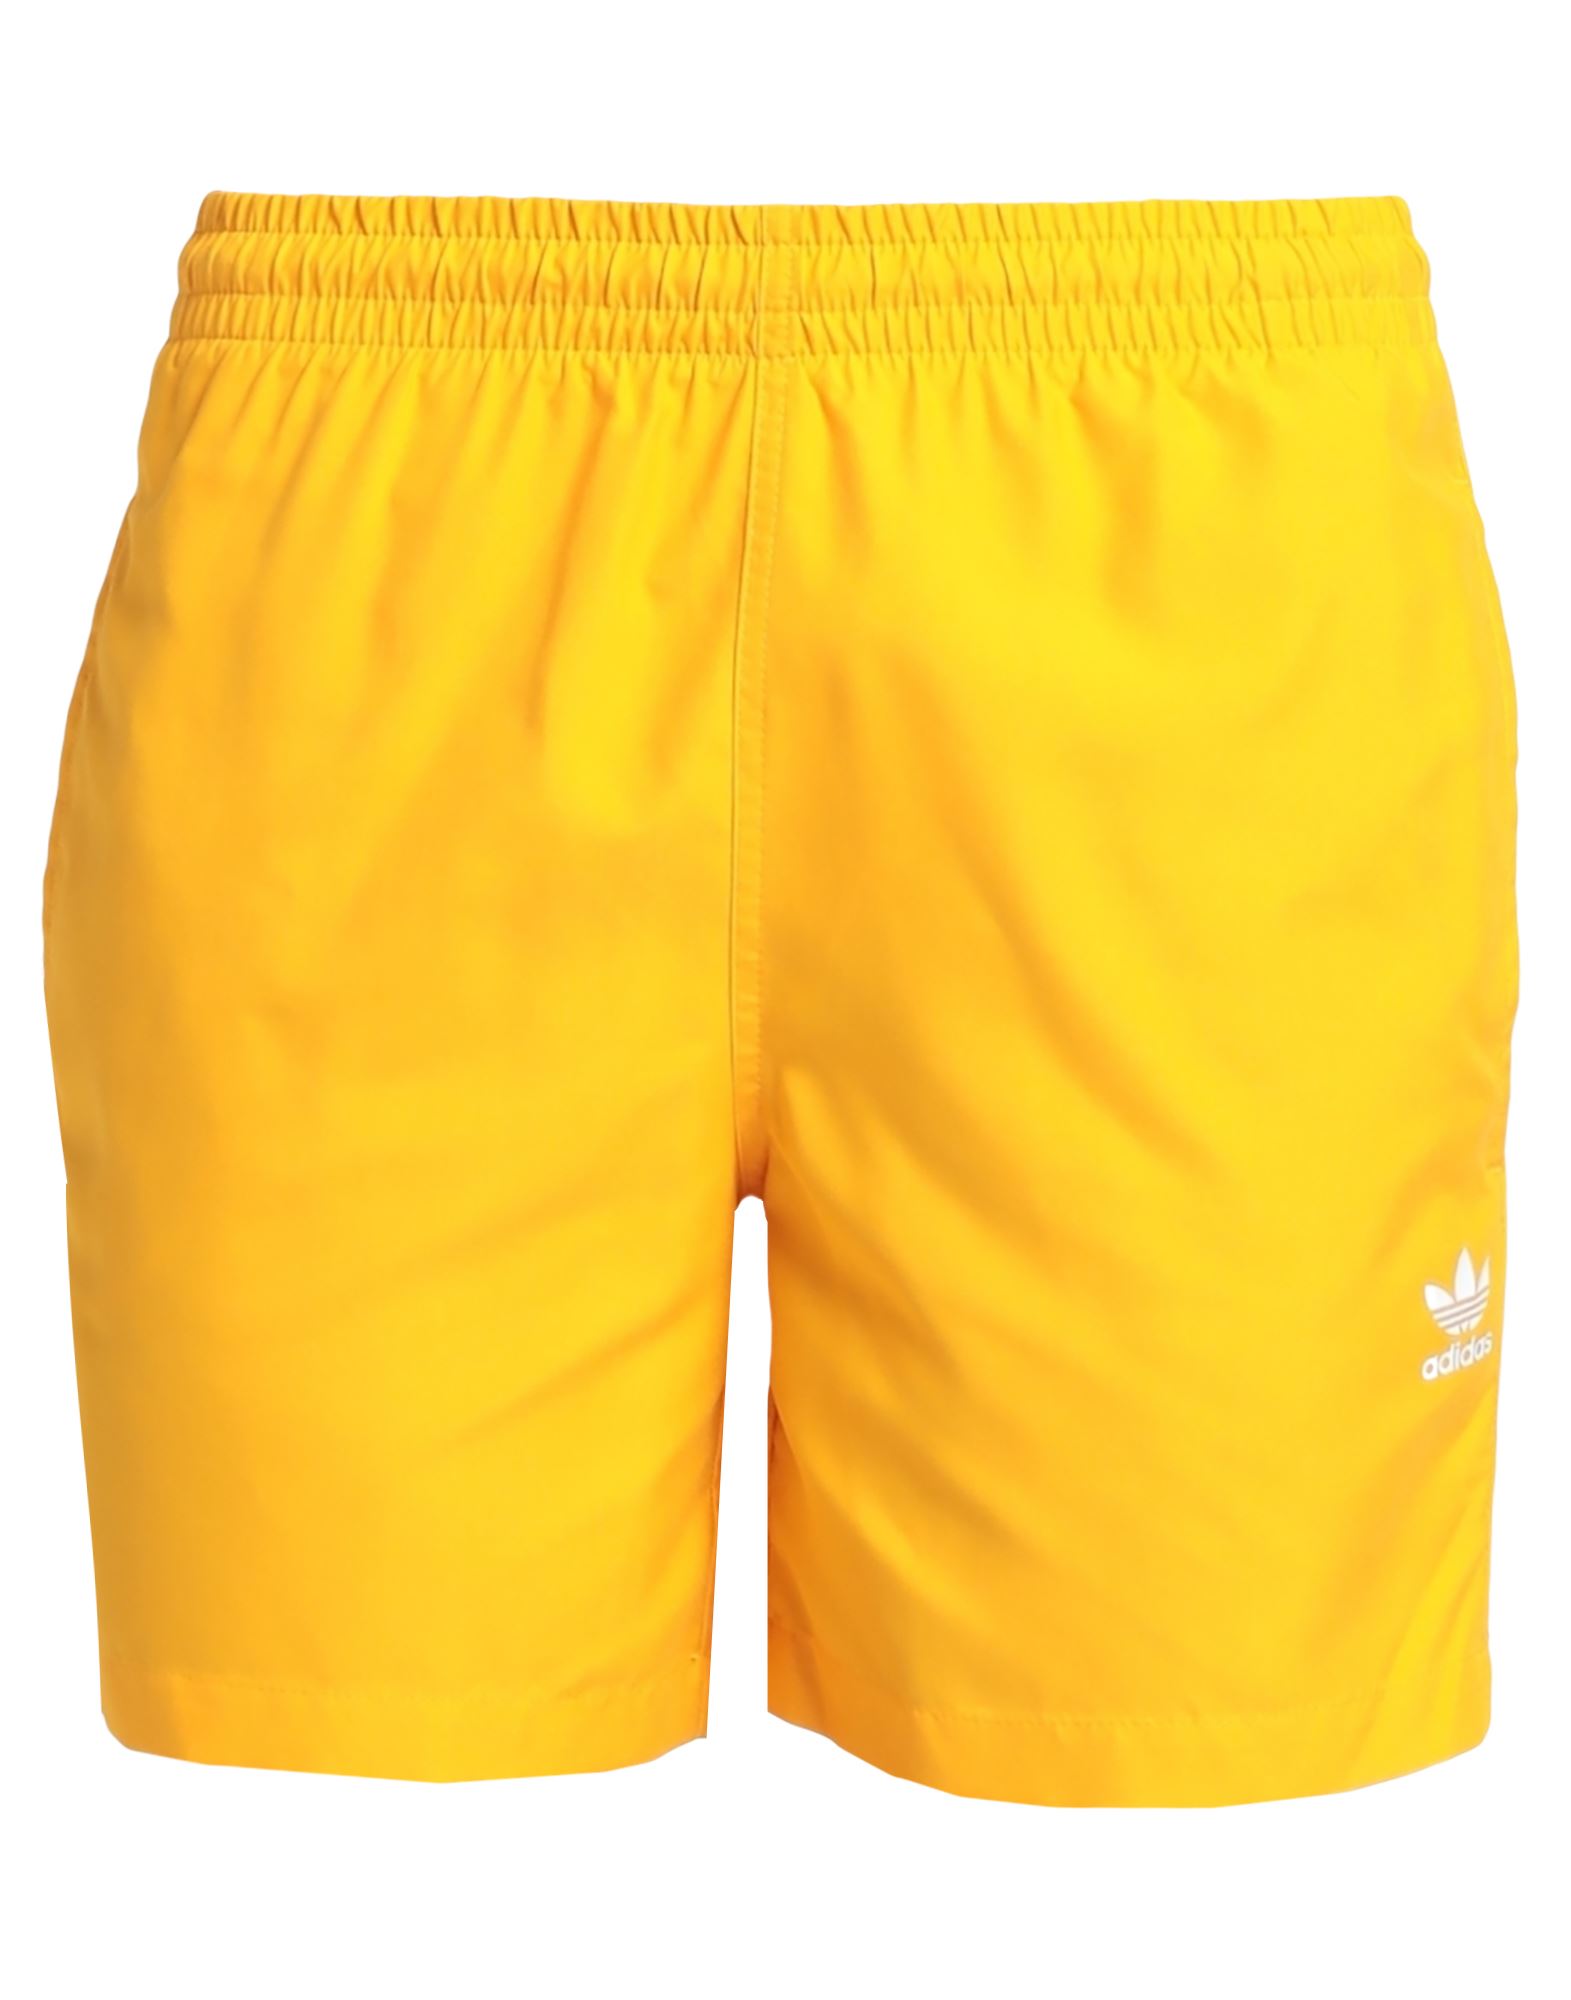 Adidas Originals Swim Trunks In Yellow